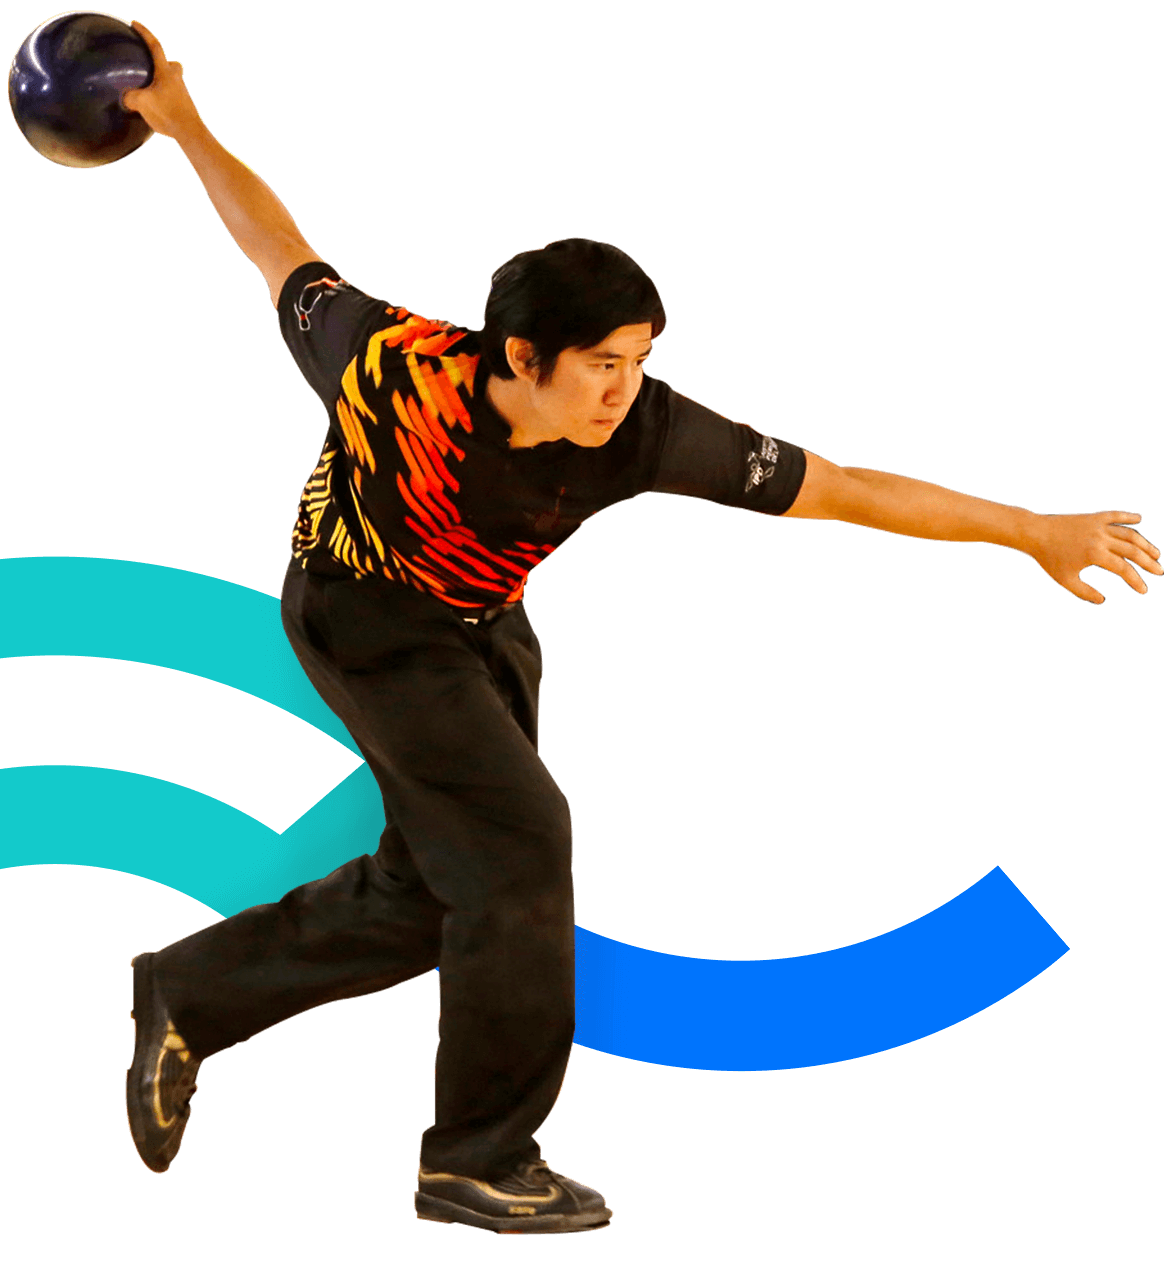 En la foto, un jugador se inclina sosteniendo una bola de bowling. Está lanzándola. 